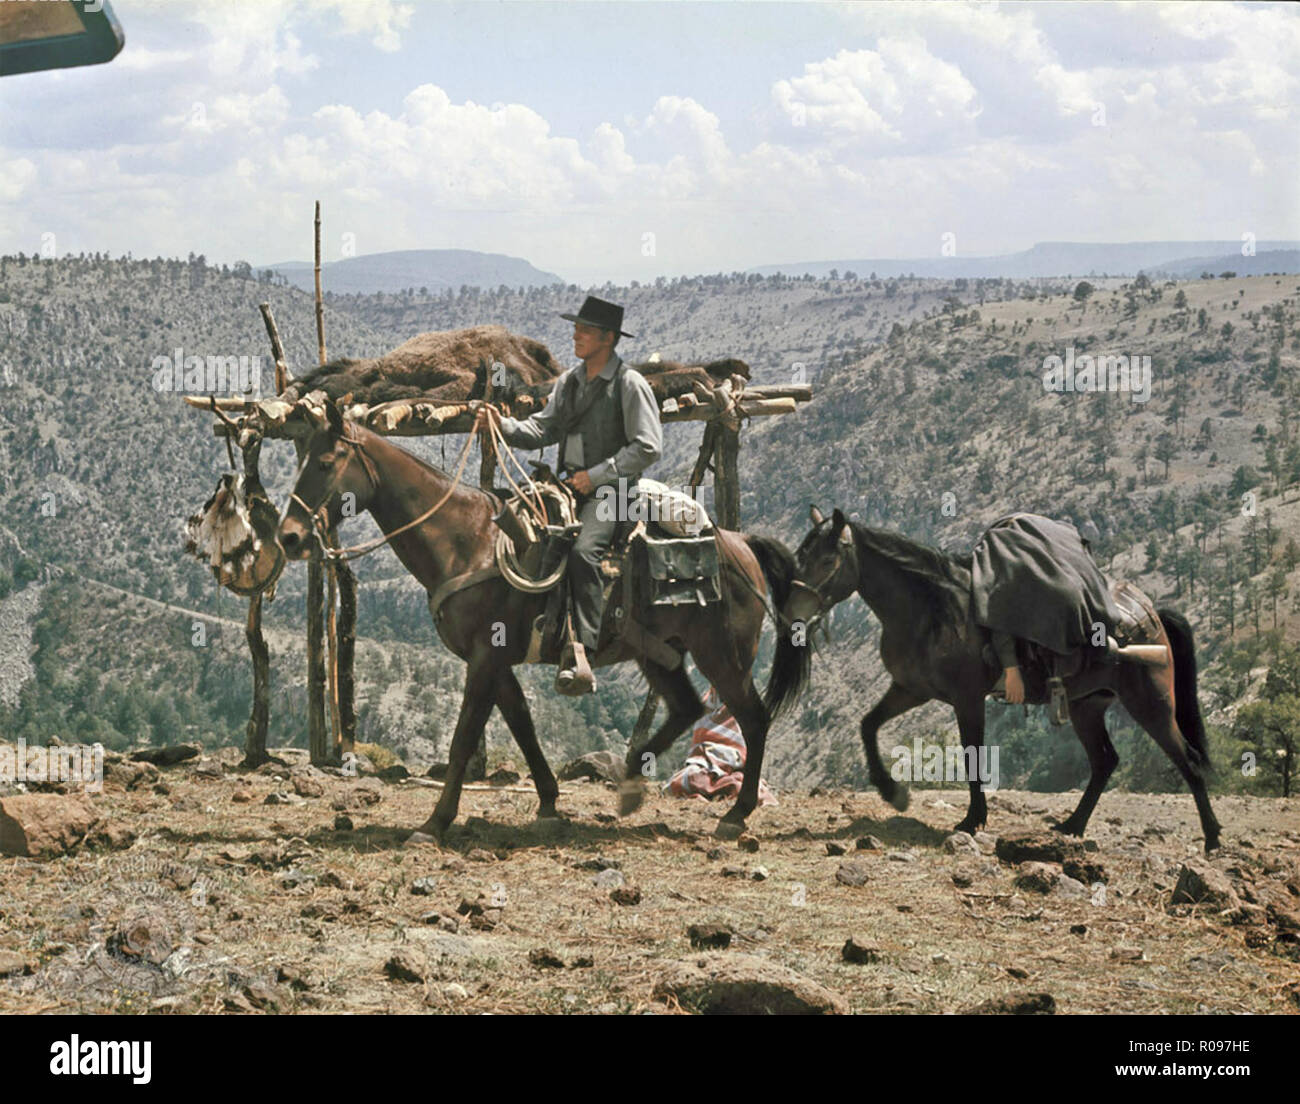 El sheriff de 1971 películas de MGM con Burt Lancaster Foto de stock